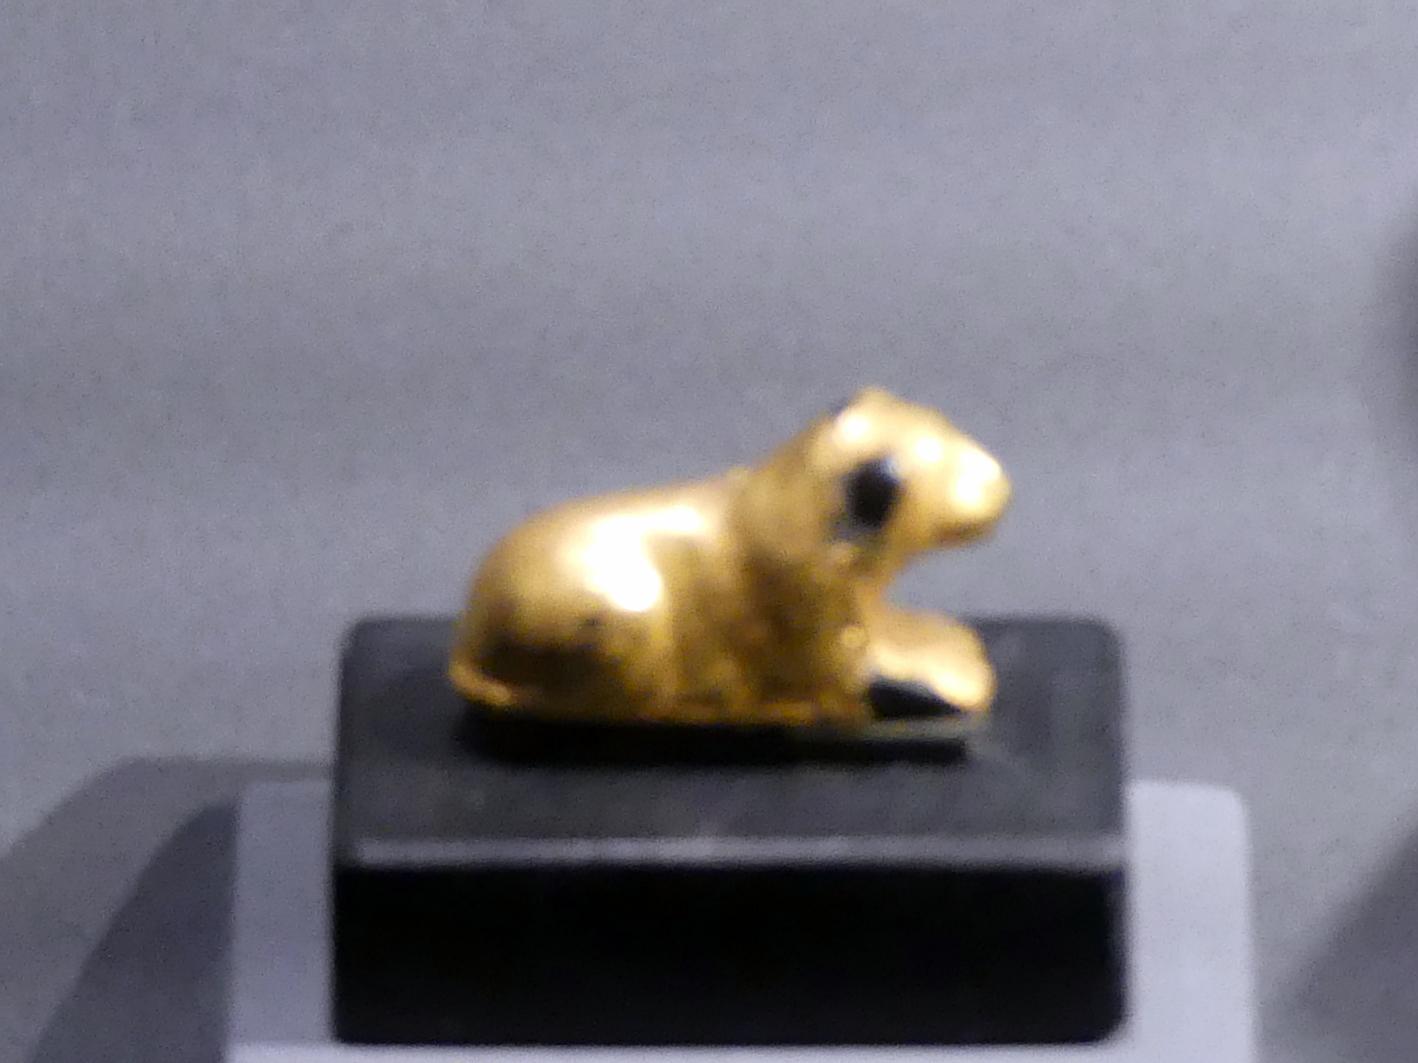 Liegender Löwe, 18. Dynastie, Undatiert, 1450 v. Chr., Bild 1/2